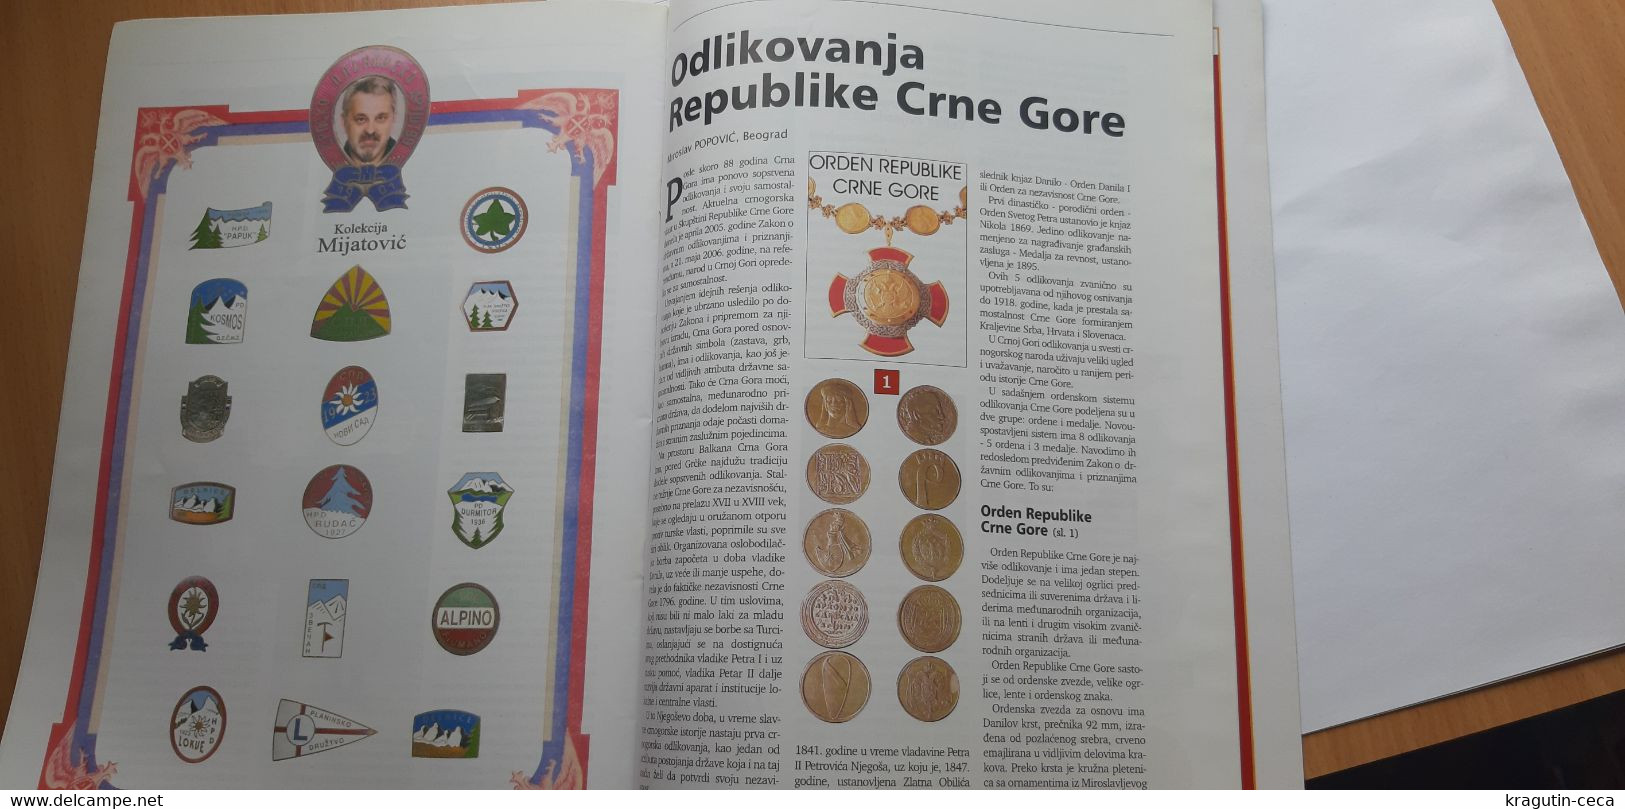 2006 Serbia Coin Numismatics magazine Yugoslavia KING NIKOLA MONTENEGRO medal order ROMAN antique banknote money